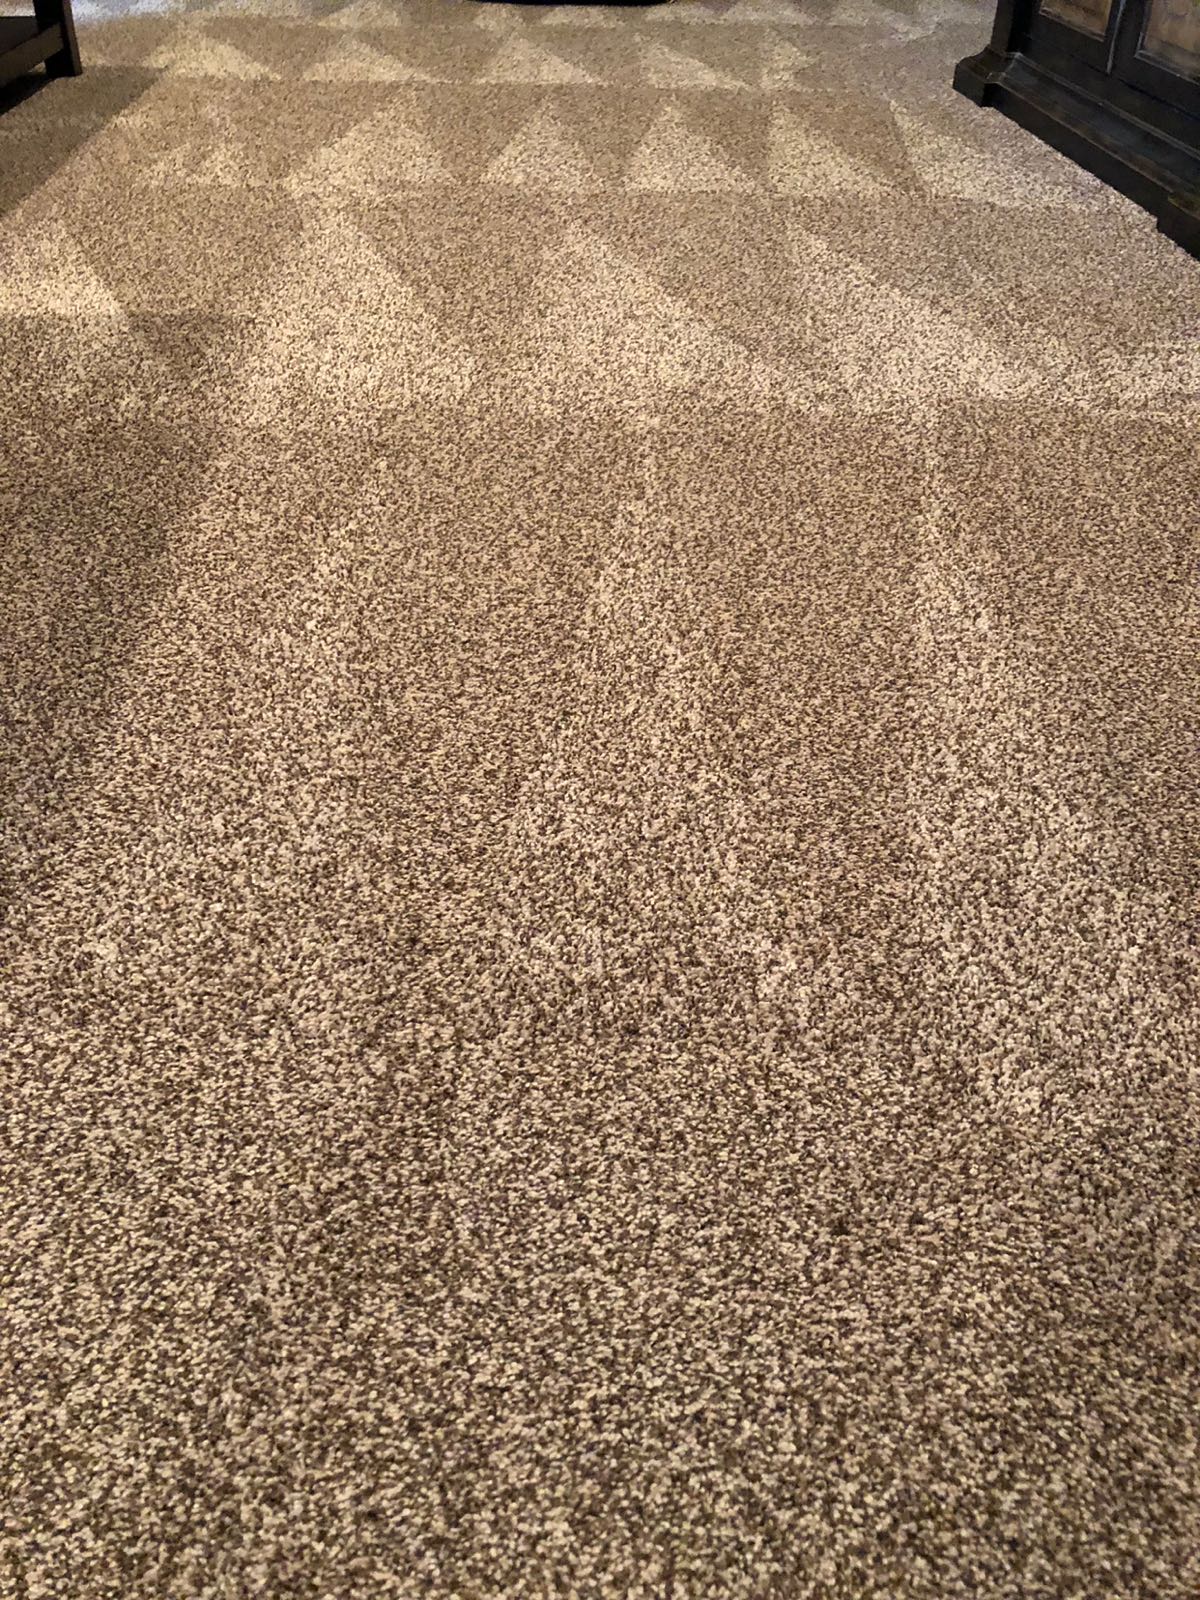 A Clean carpet.